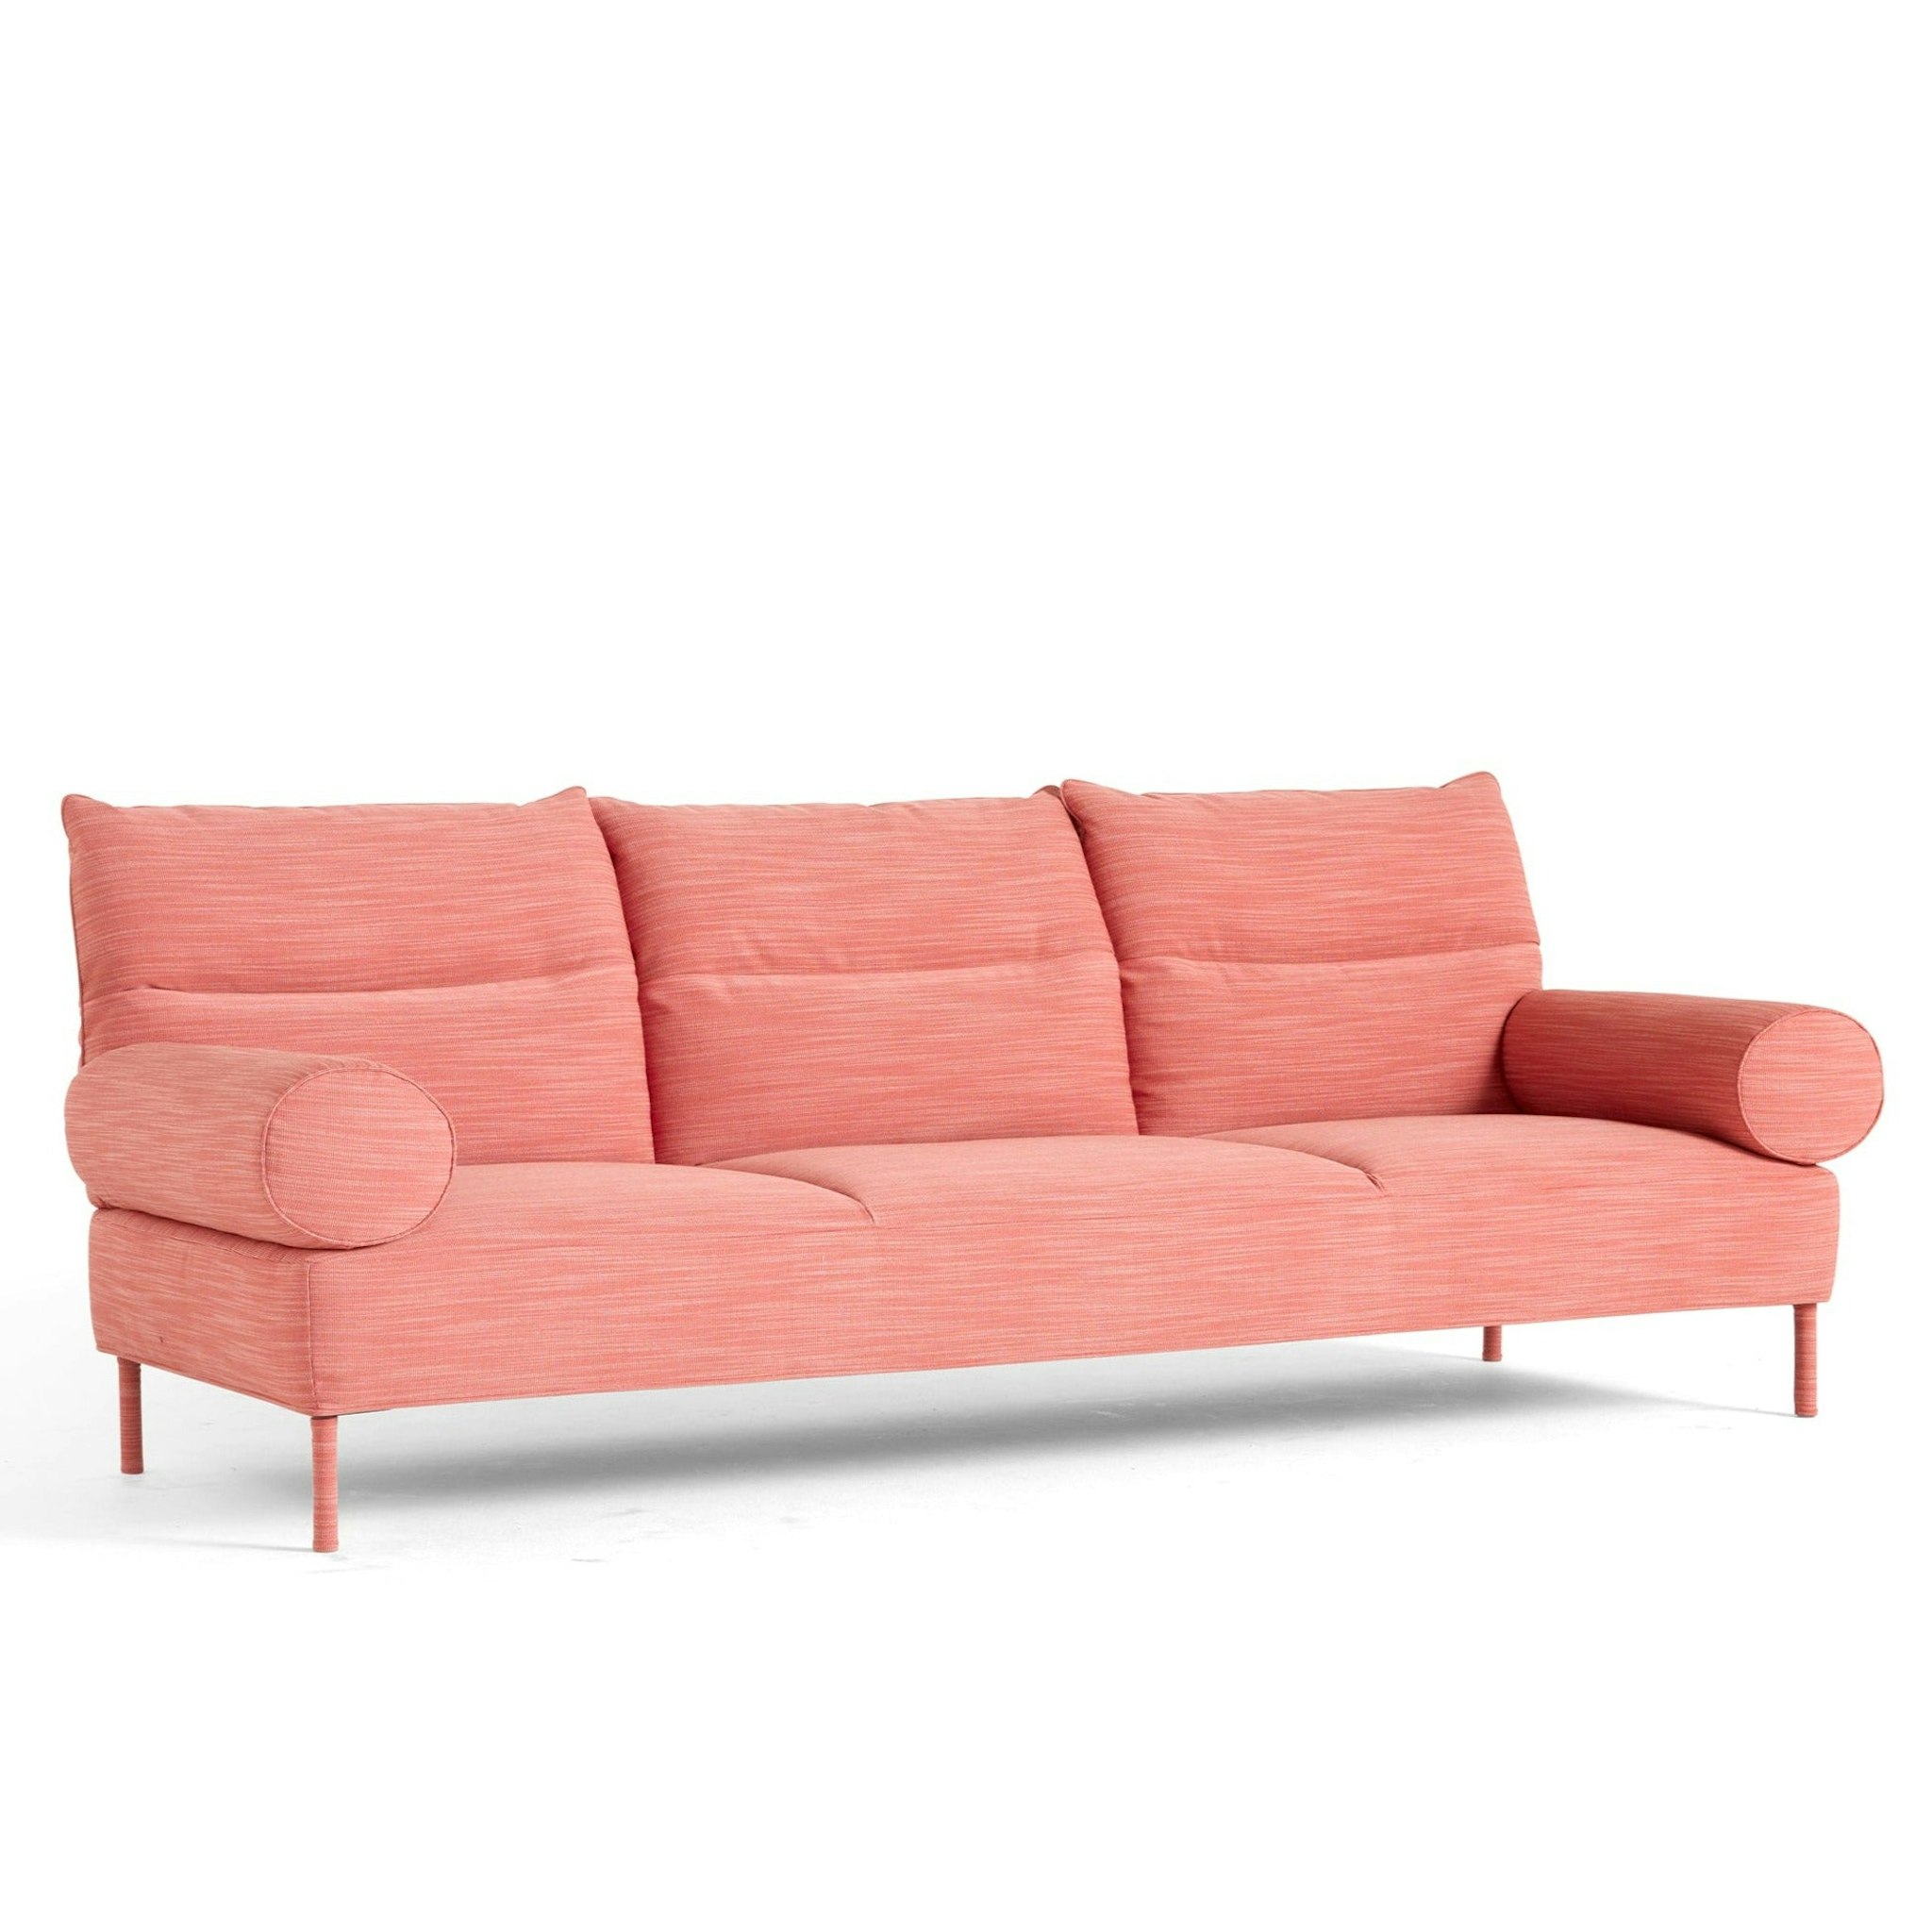 Pandarine Sofa by Inga Sempé for Hay